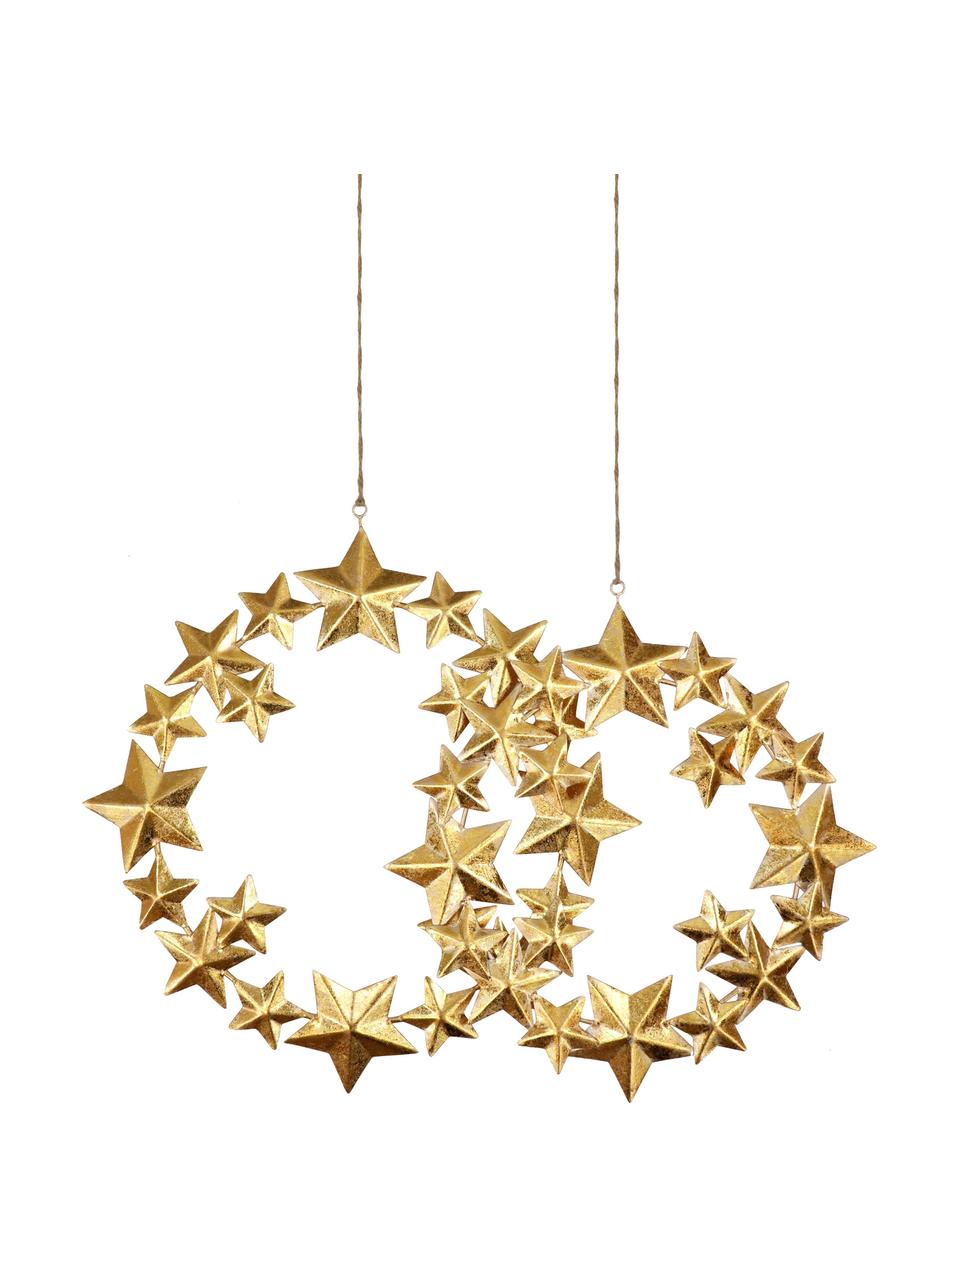 Komplet dekoracji wiszących Stars, 2 elem., Metal powlekany, Odcienie złotego, Komplet z różnymi rozmiarami